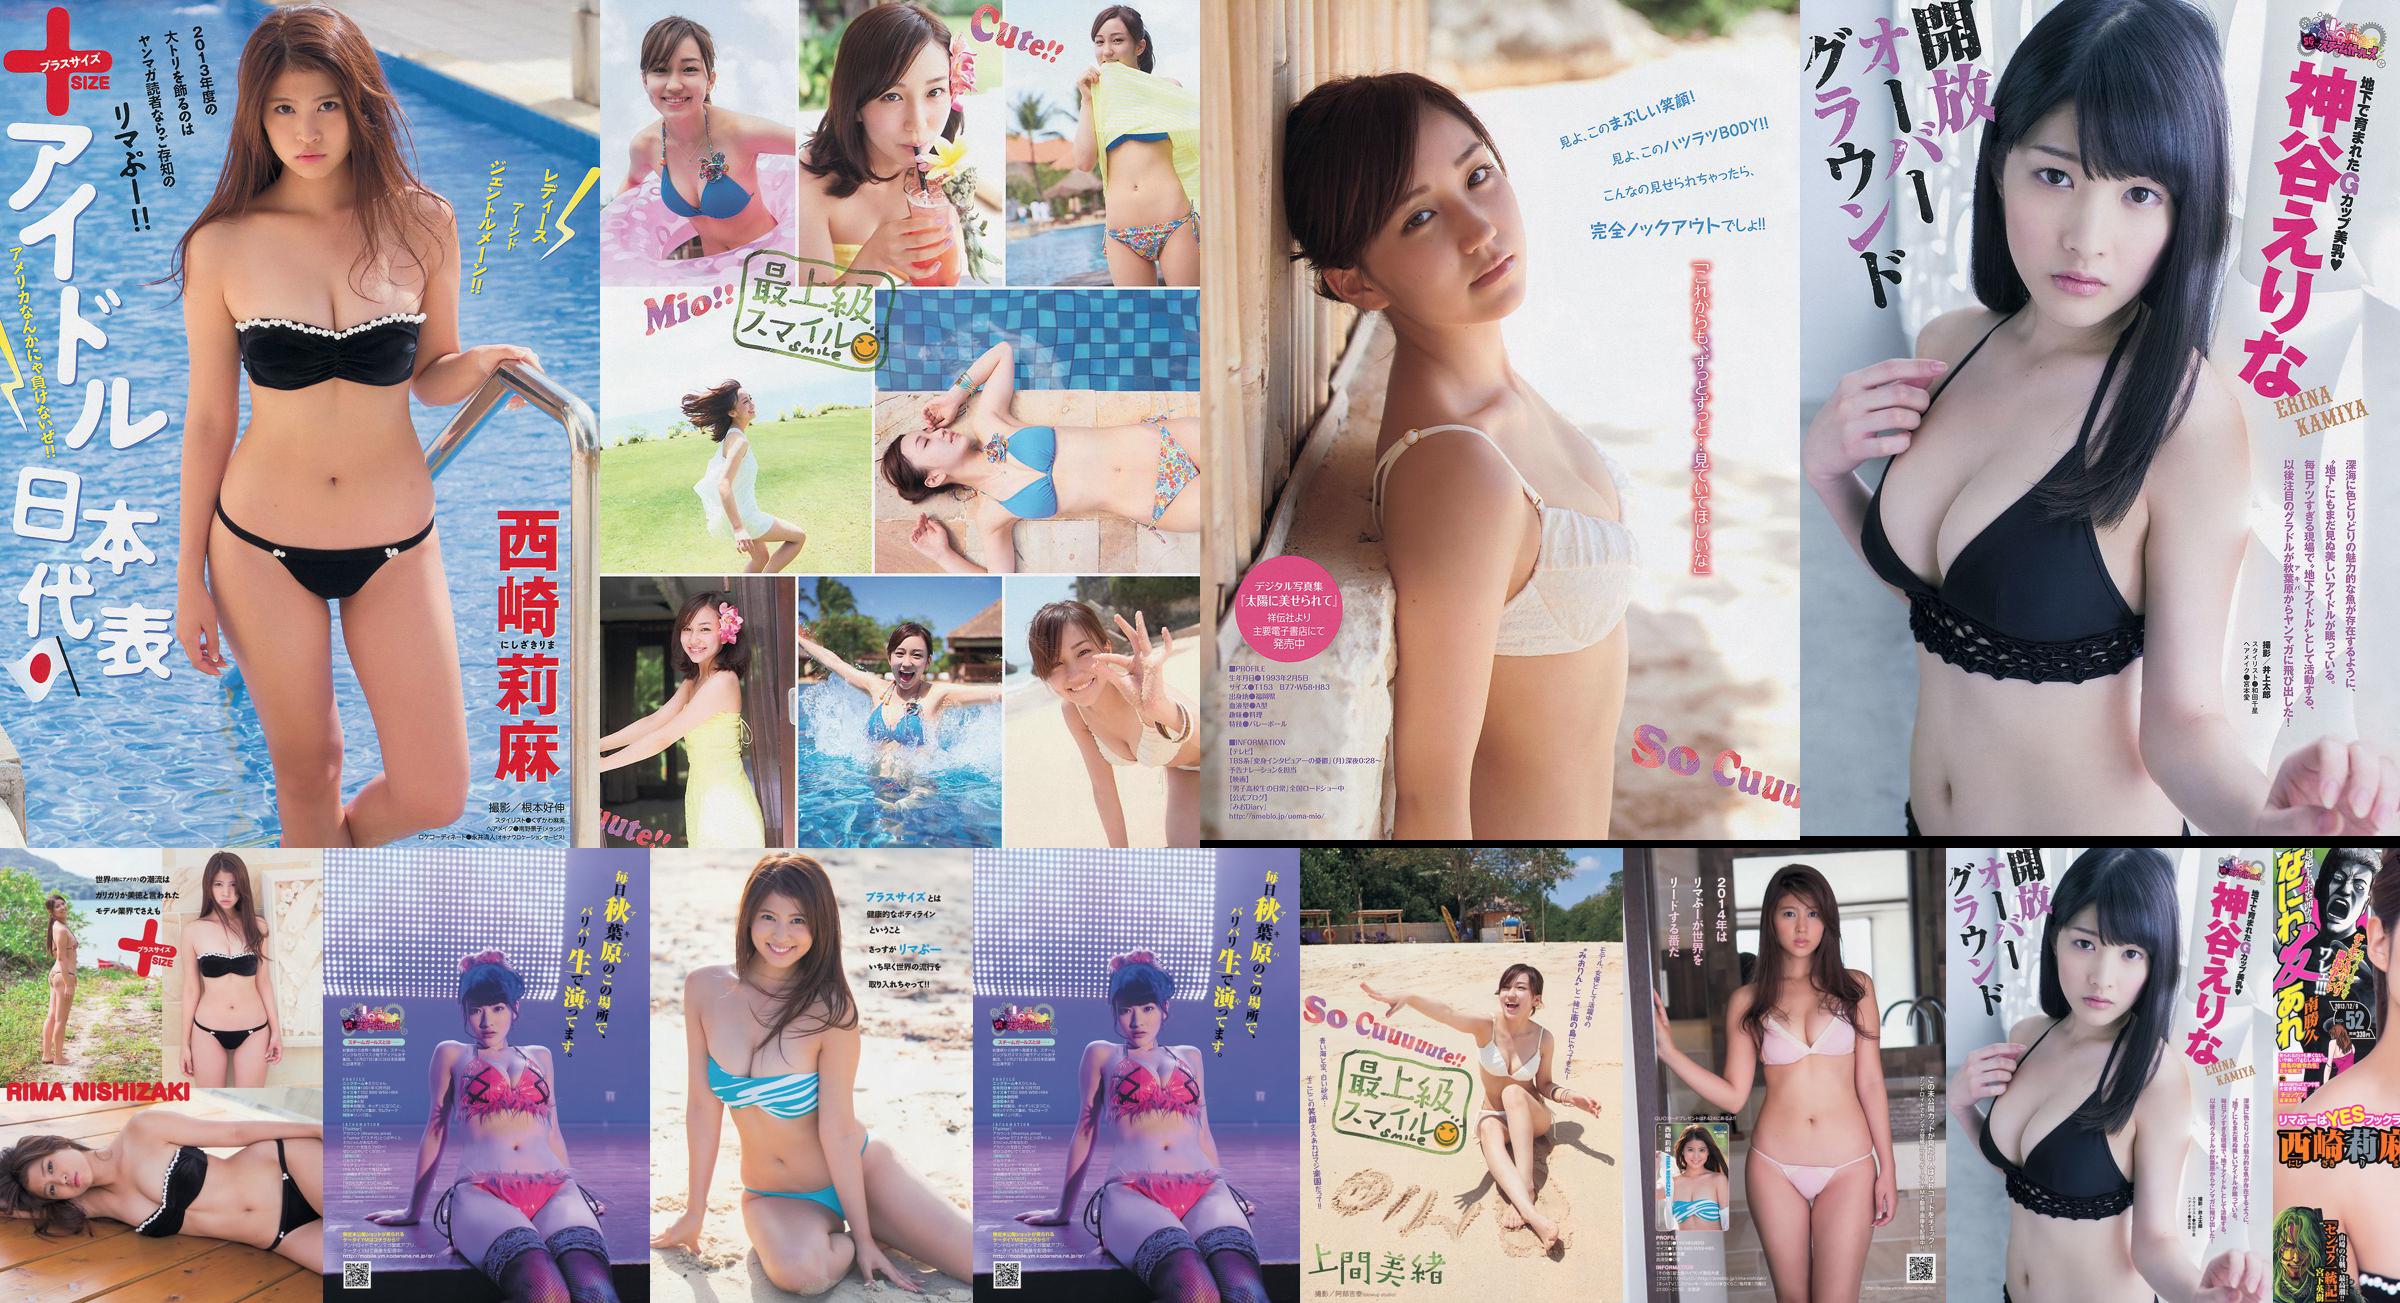 [นิตยสาร Young] Rima Nishizaki Mio Uema Erina Kamiya 2013 No.52 Photo Moshi No.b0ef12 หน้า 1